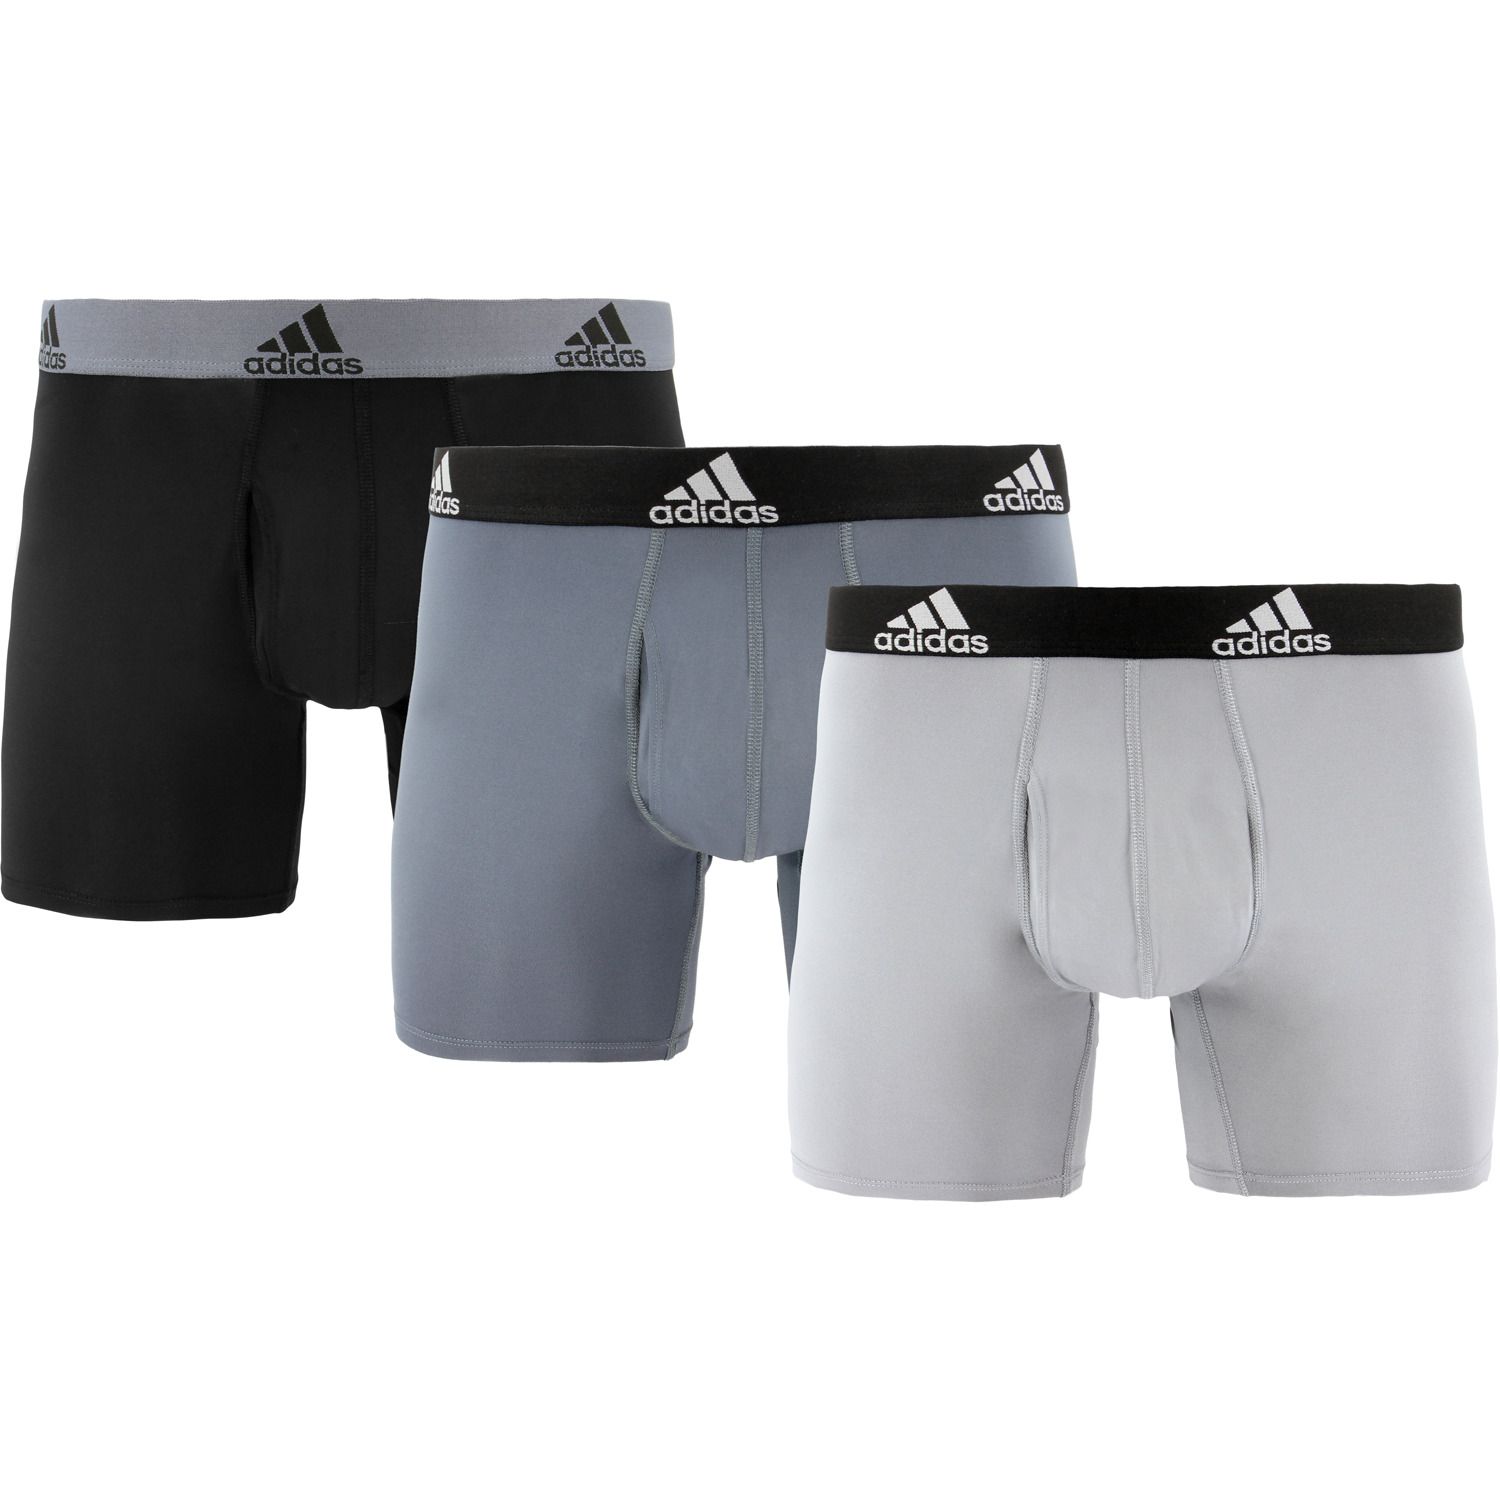 adidas men's sport performance climalite trunk underwear